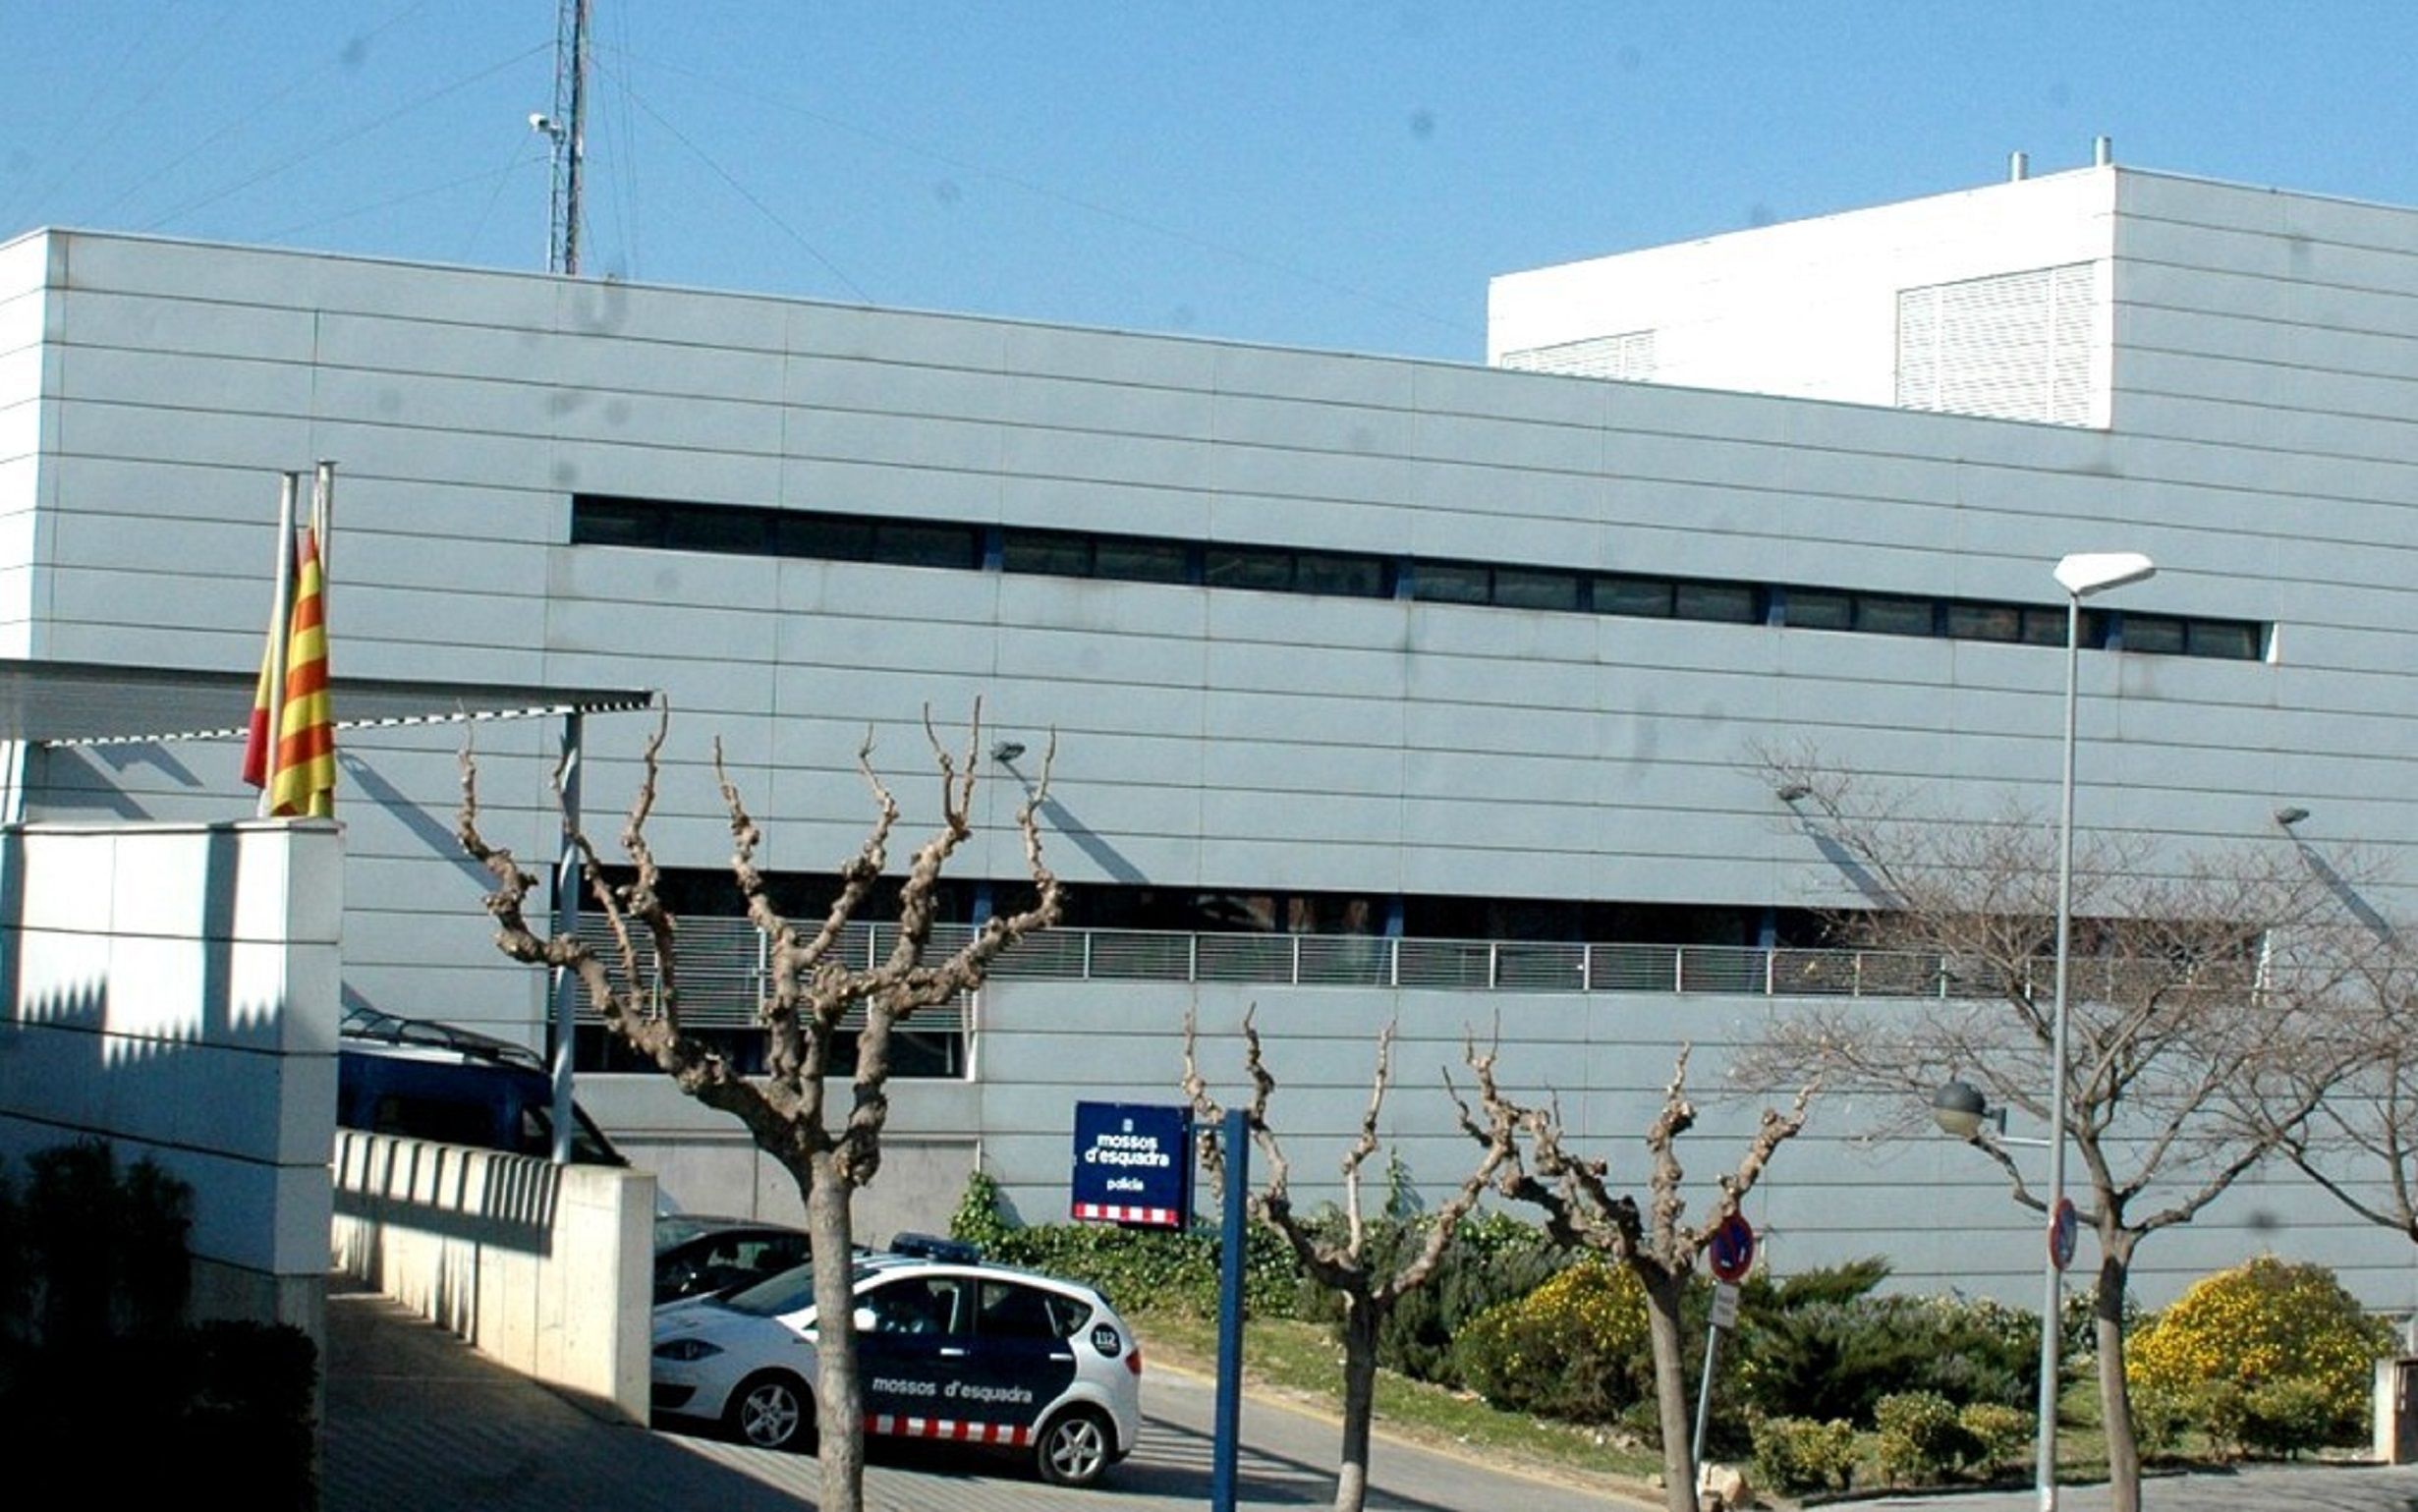 Comisaría de Figueres / Mossos d'Esquadra